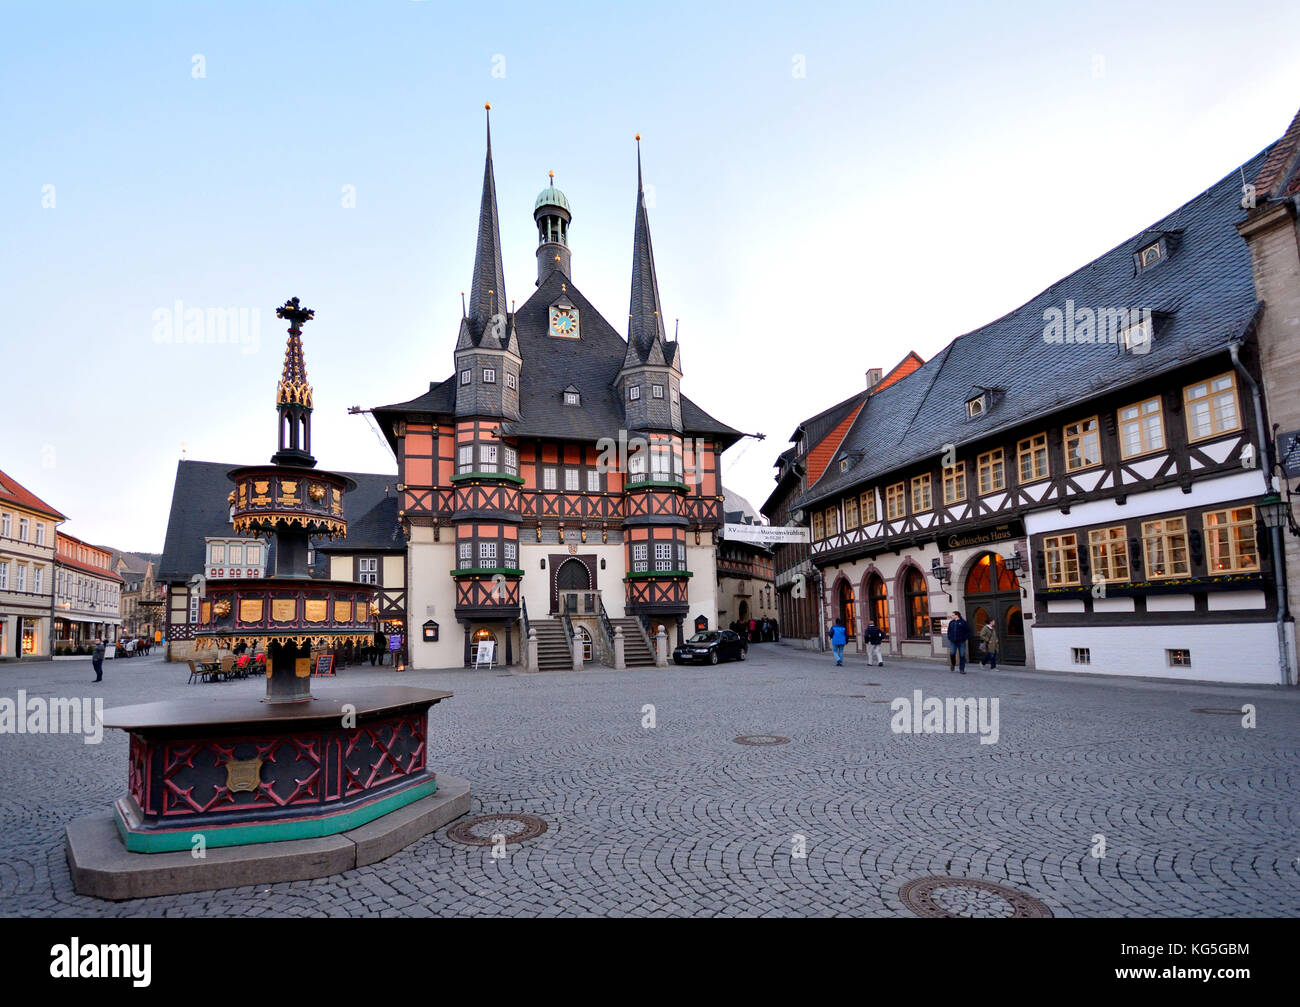 Wernigerode, Sajonia-Anhalt. La Marktplatz (plaza) en Wernigerode con el ayuntamiento y casas de entramado de madera. Conservación de monumentos y edificios históricos Foto de stock